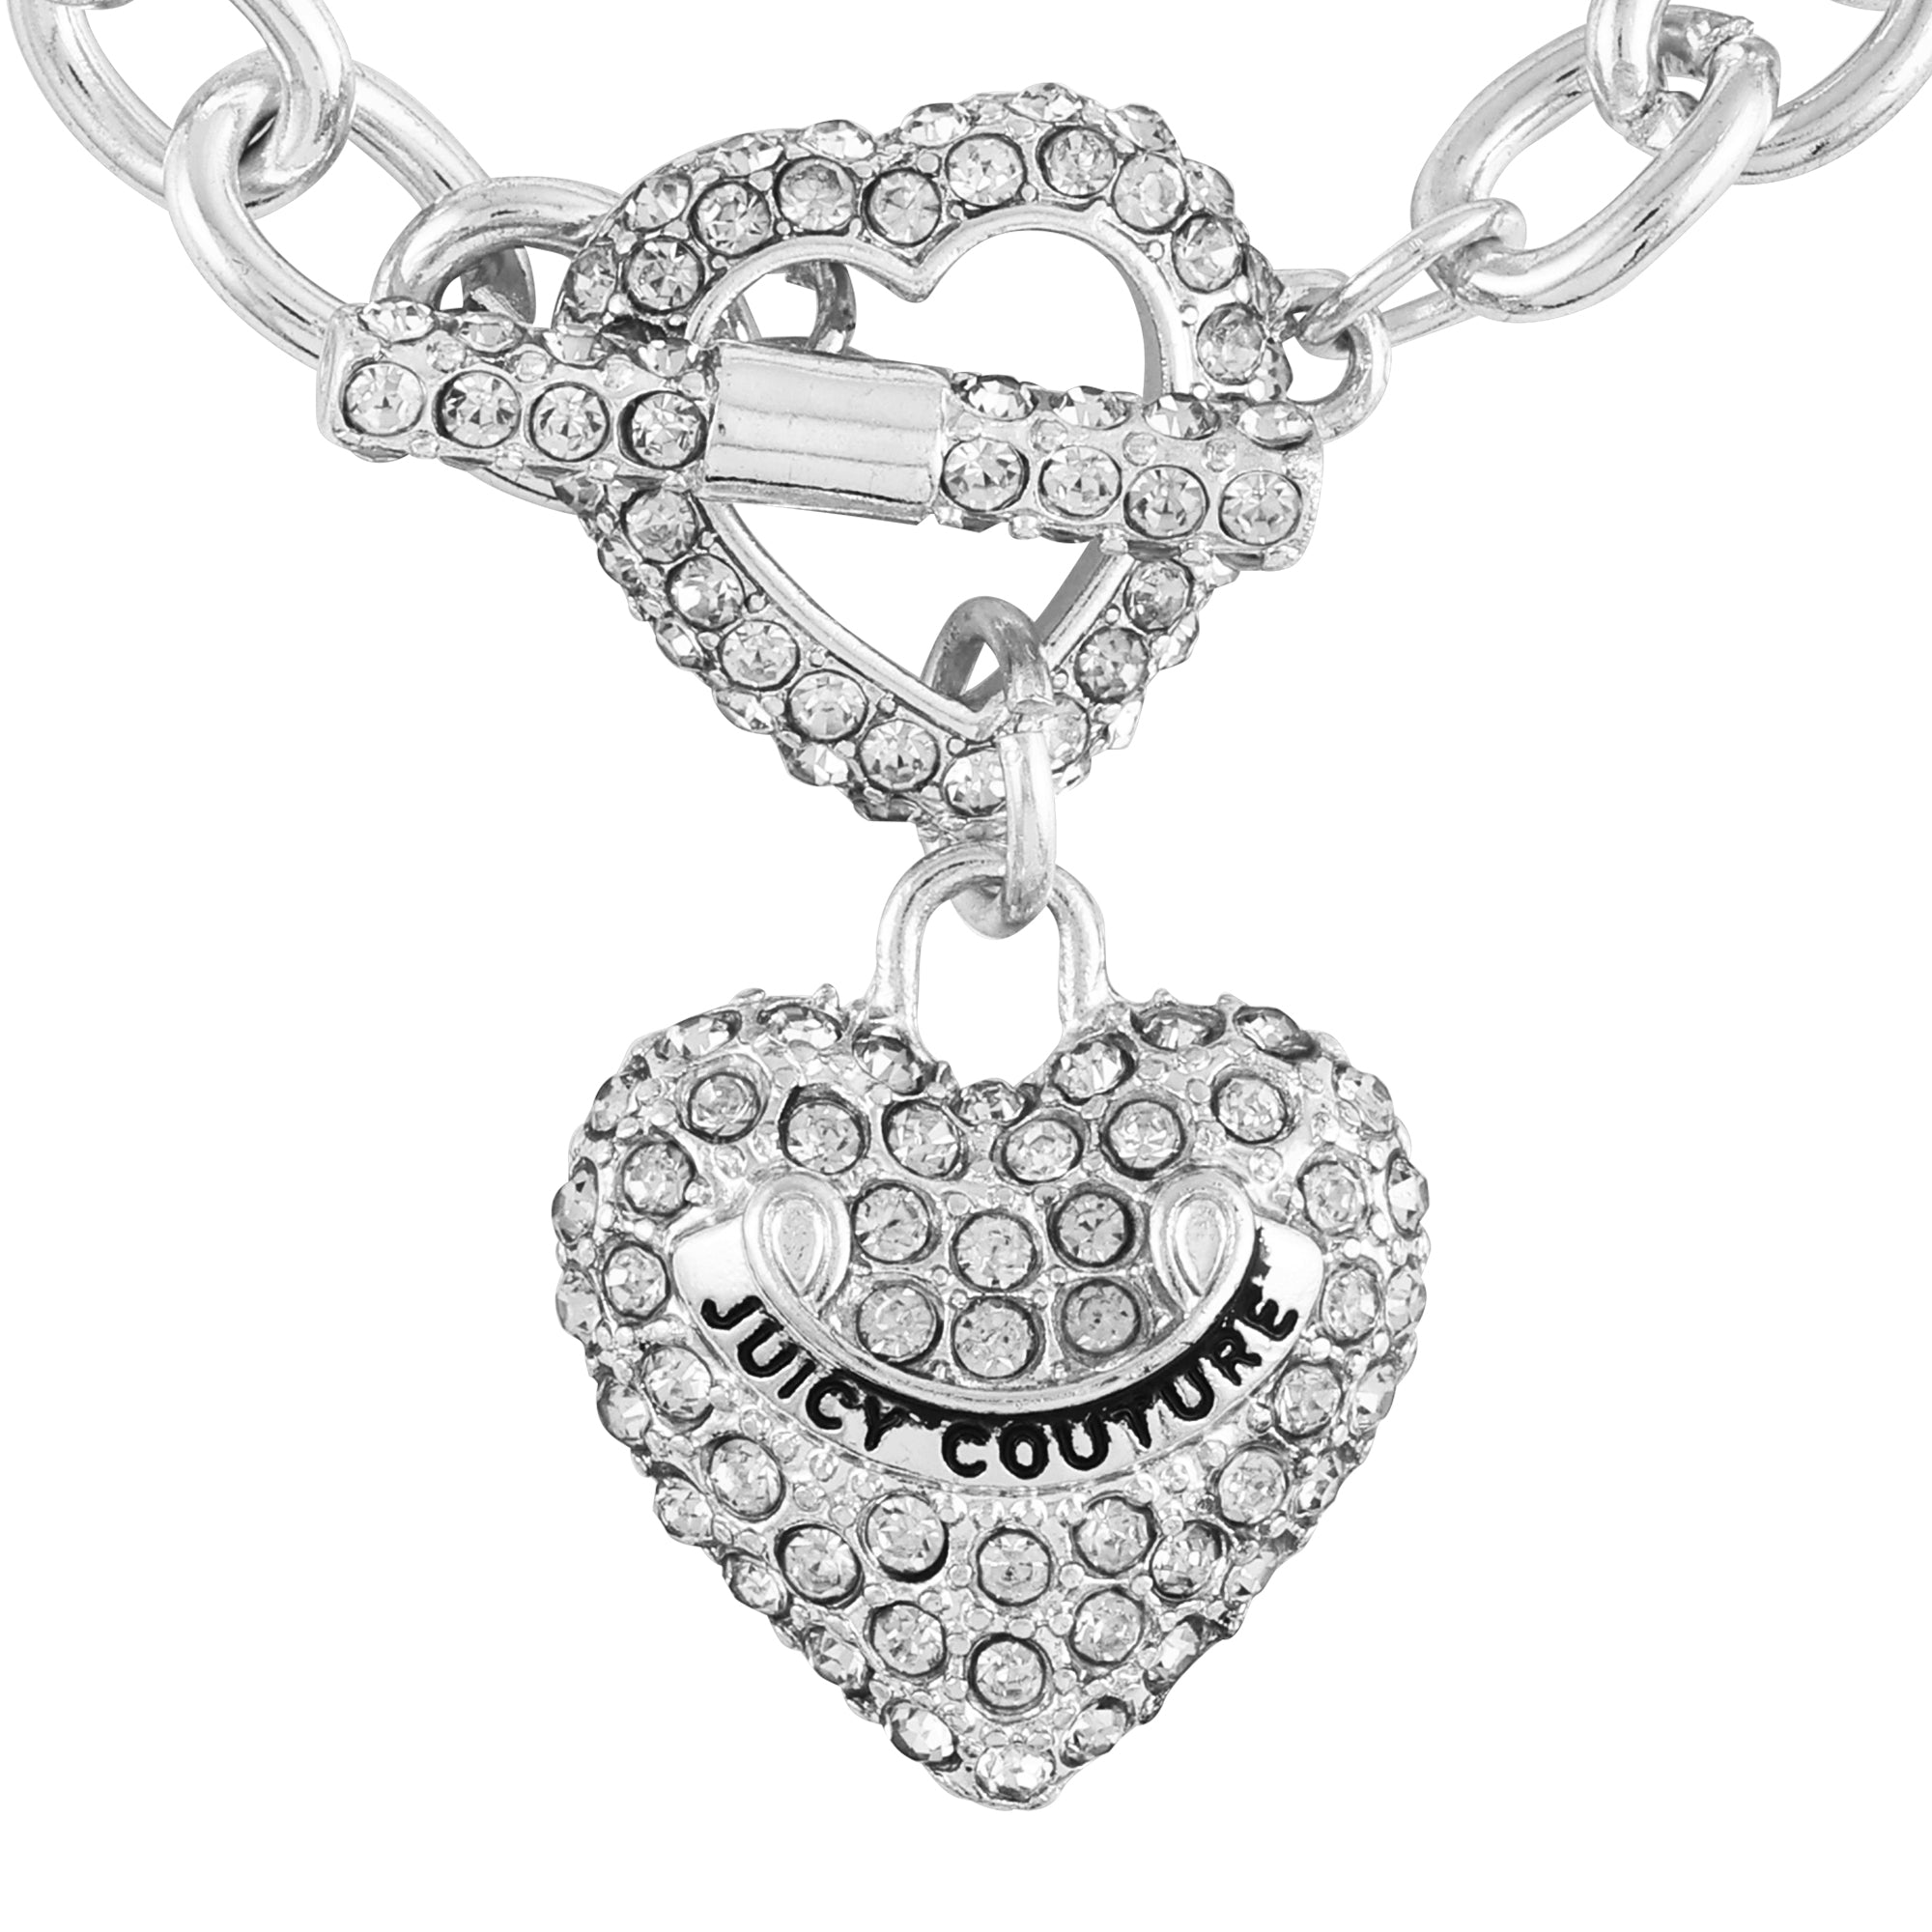 Bling Heart Pendant Charm Bracelet - Juicy Couture